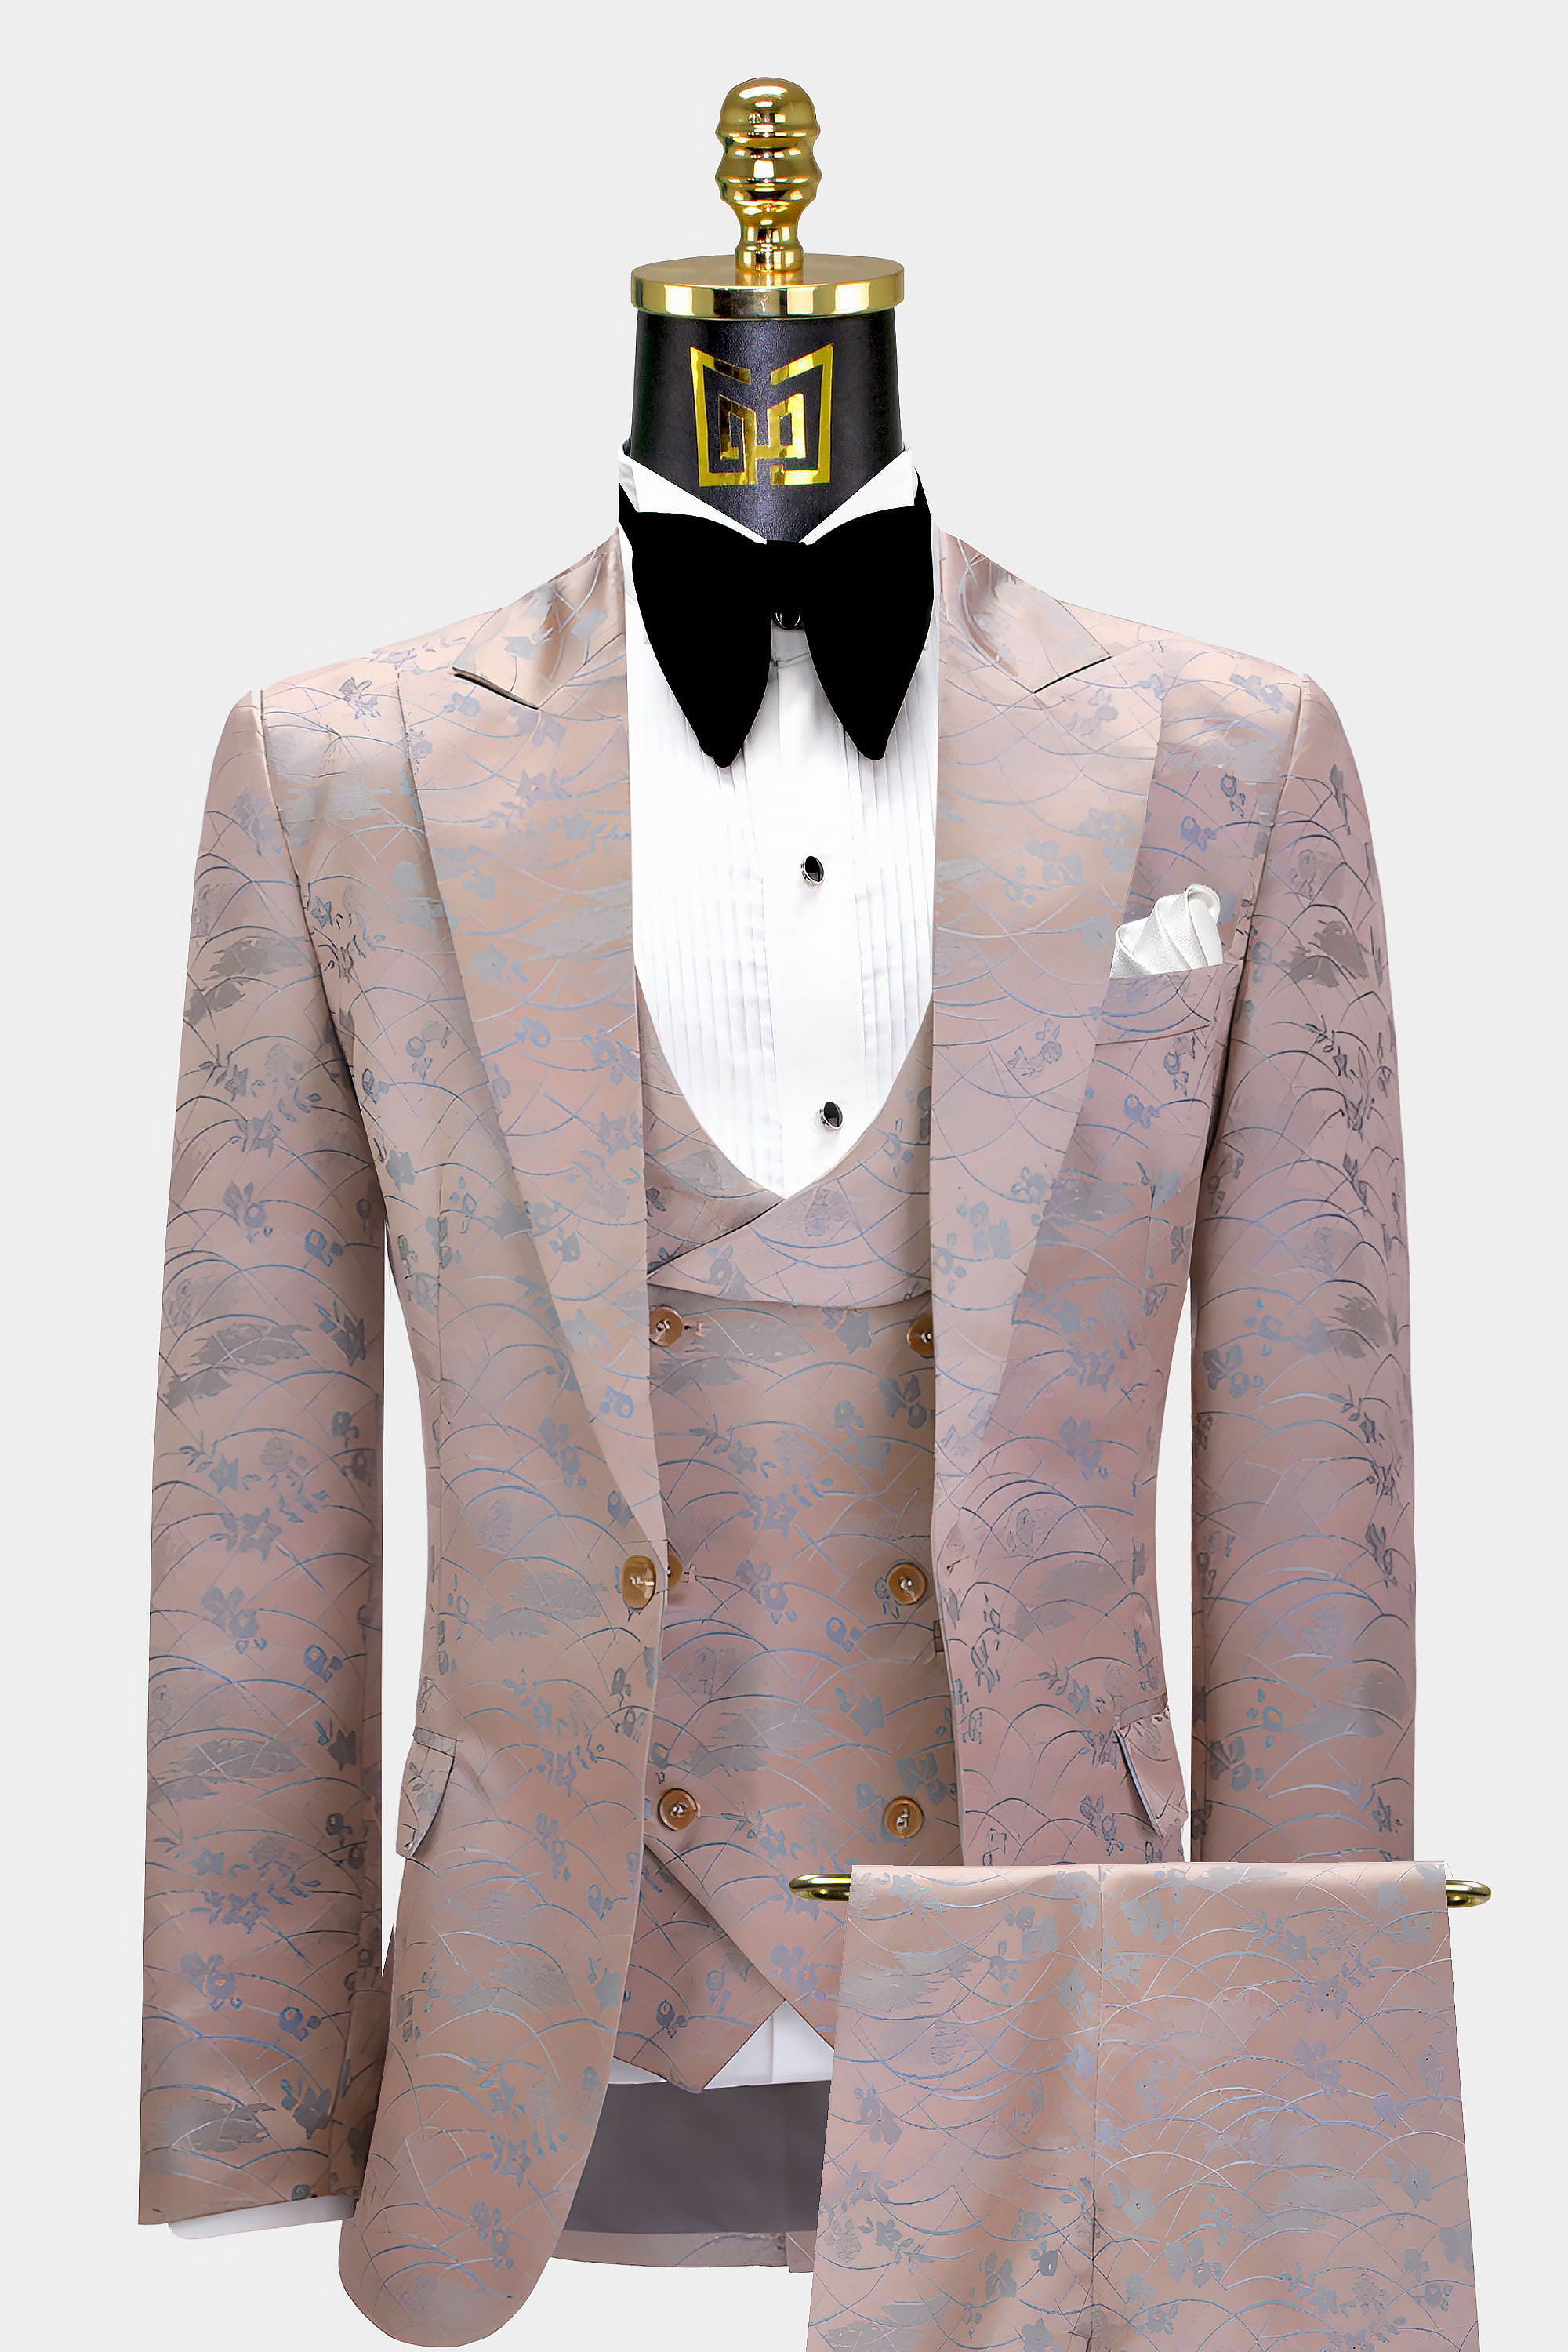 Dusty-Rose-Suit-Groom-Prom-Wedding-Suit-For-Men-from-Gentlemansguru.com